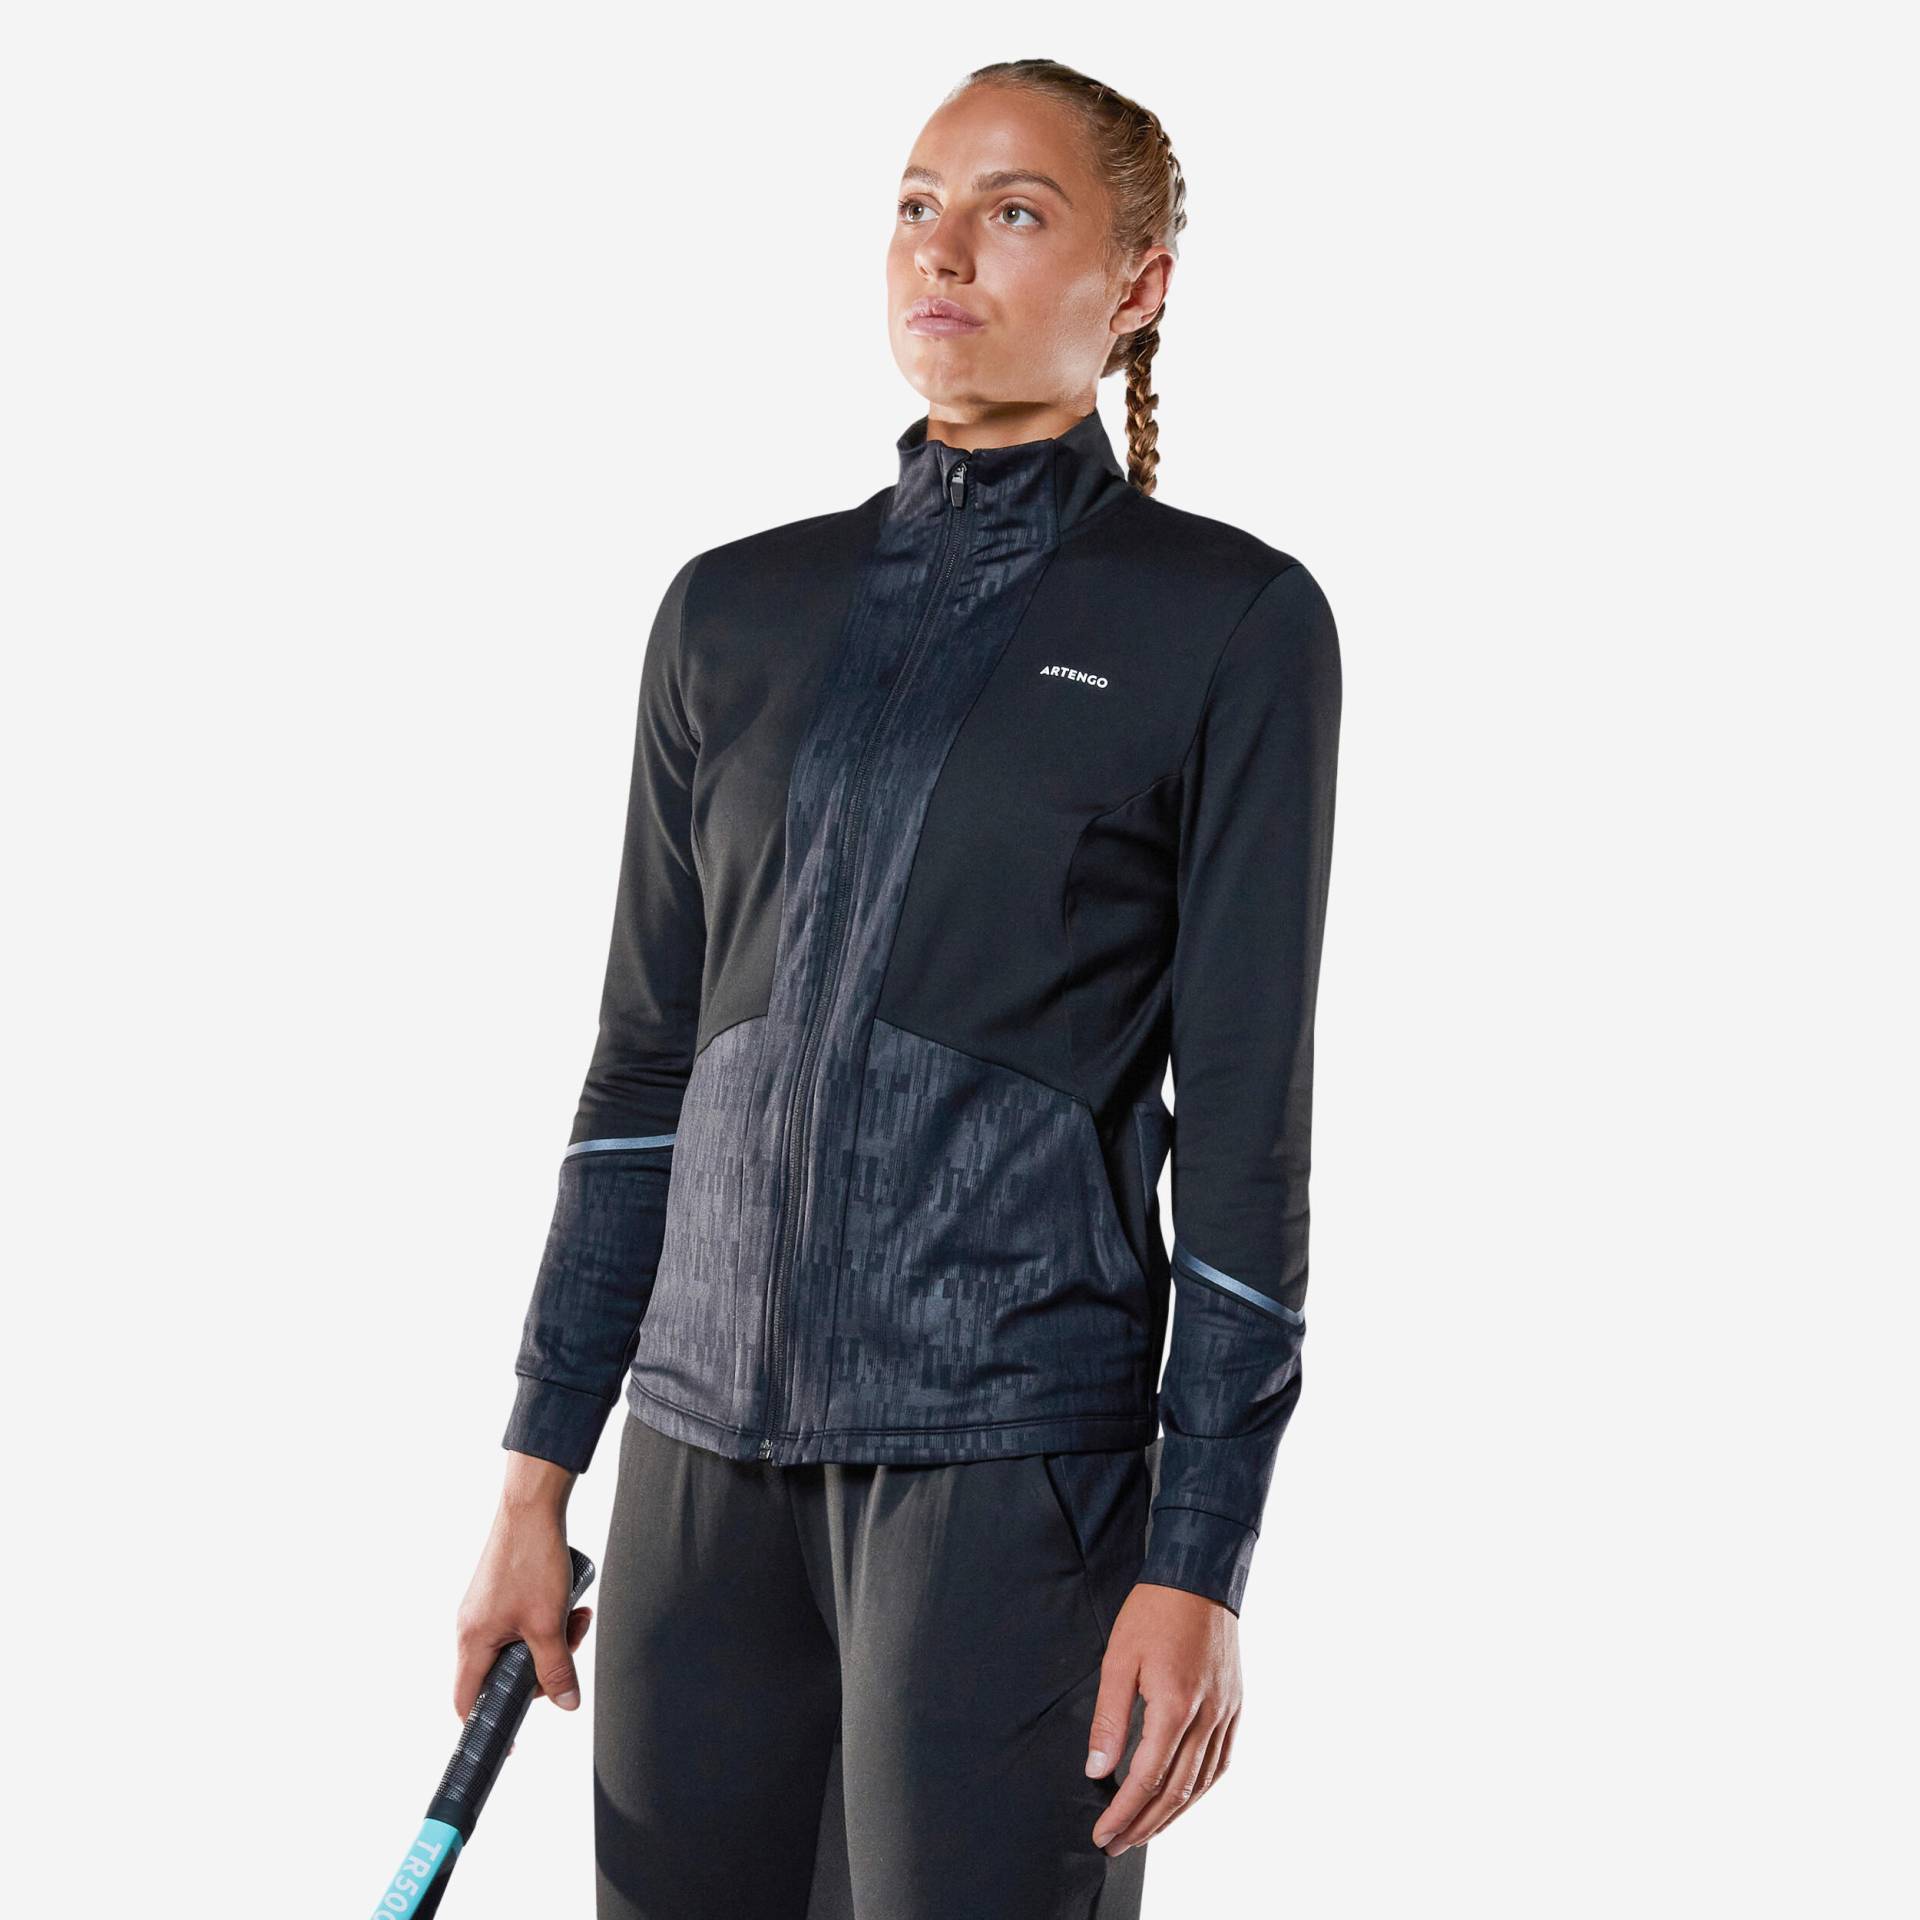 Damen Tennisjacke - Dry TH500 schwarz von ARTENGO